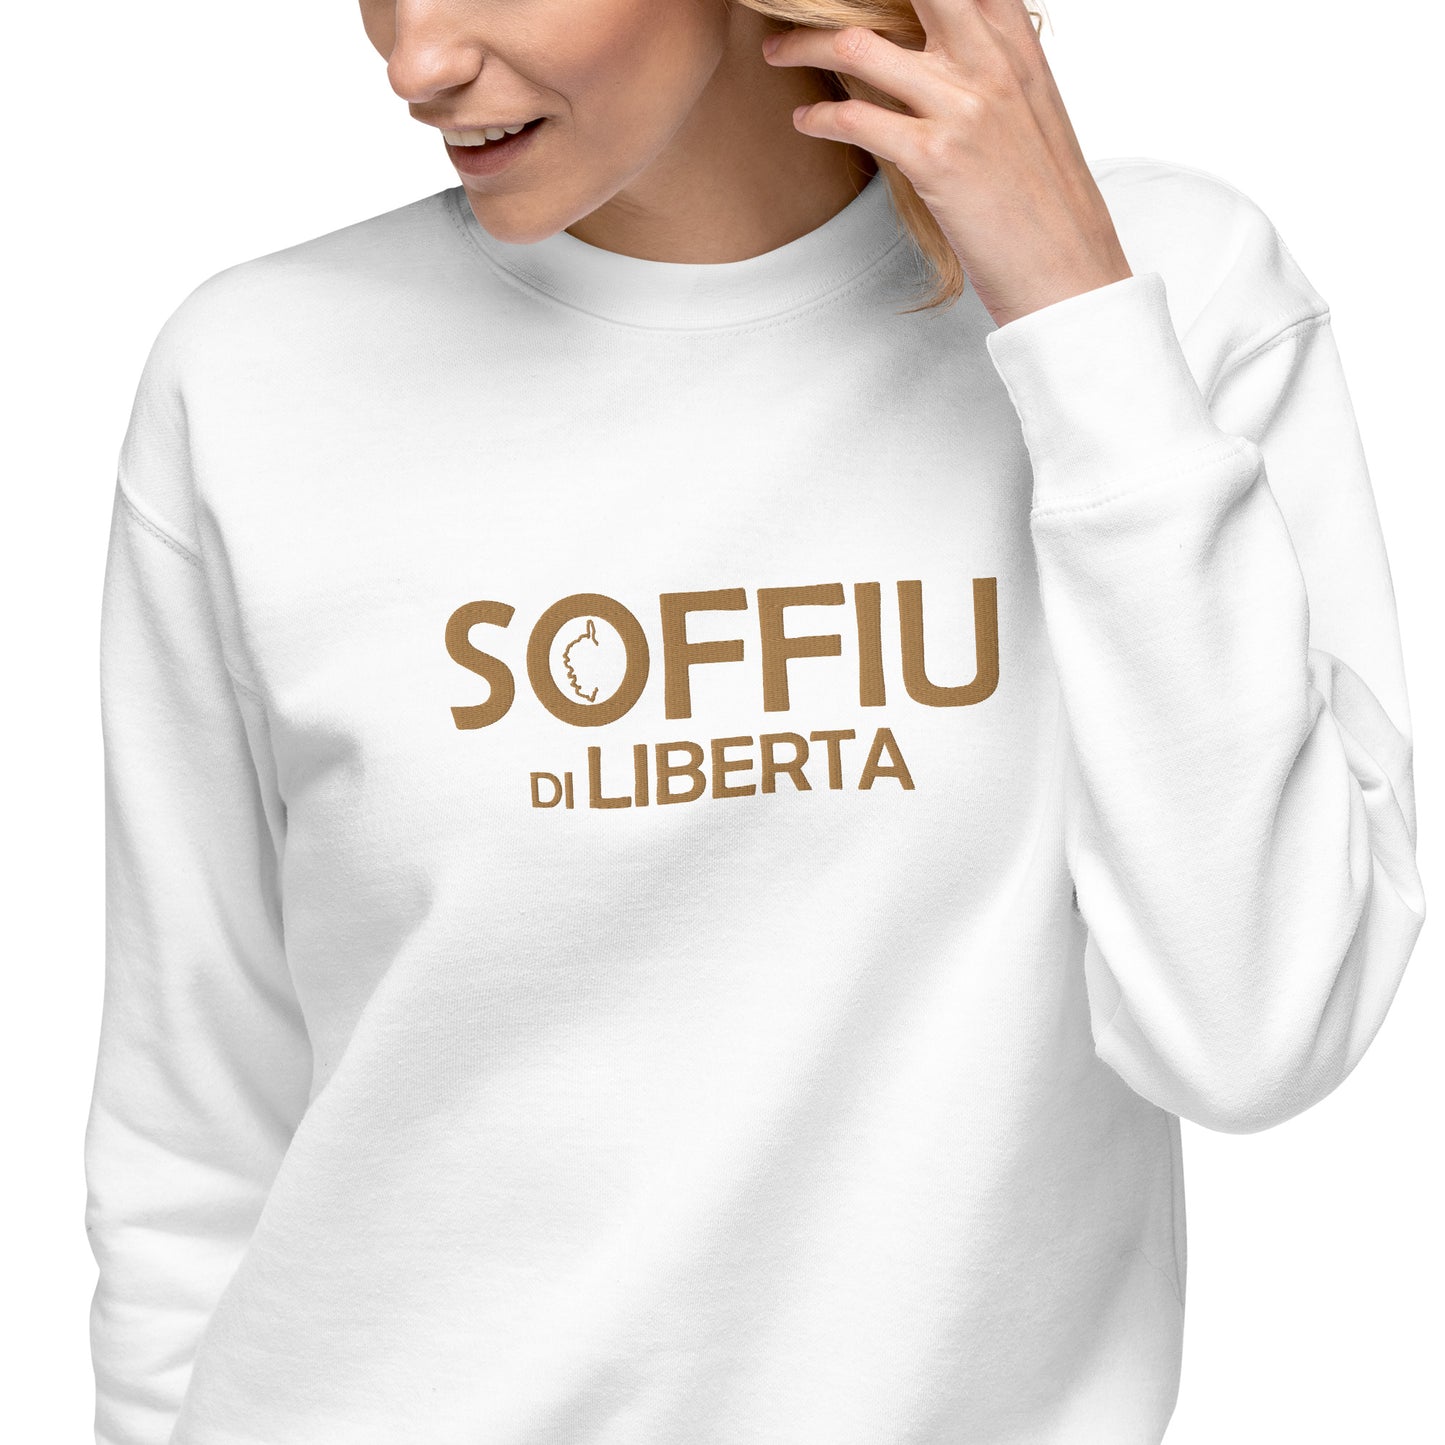 Sweatshirt premium Brodé Soffiu di Libertà